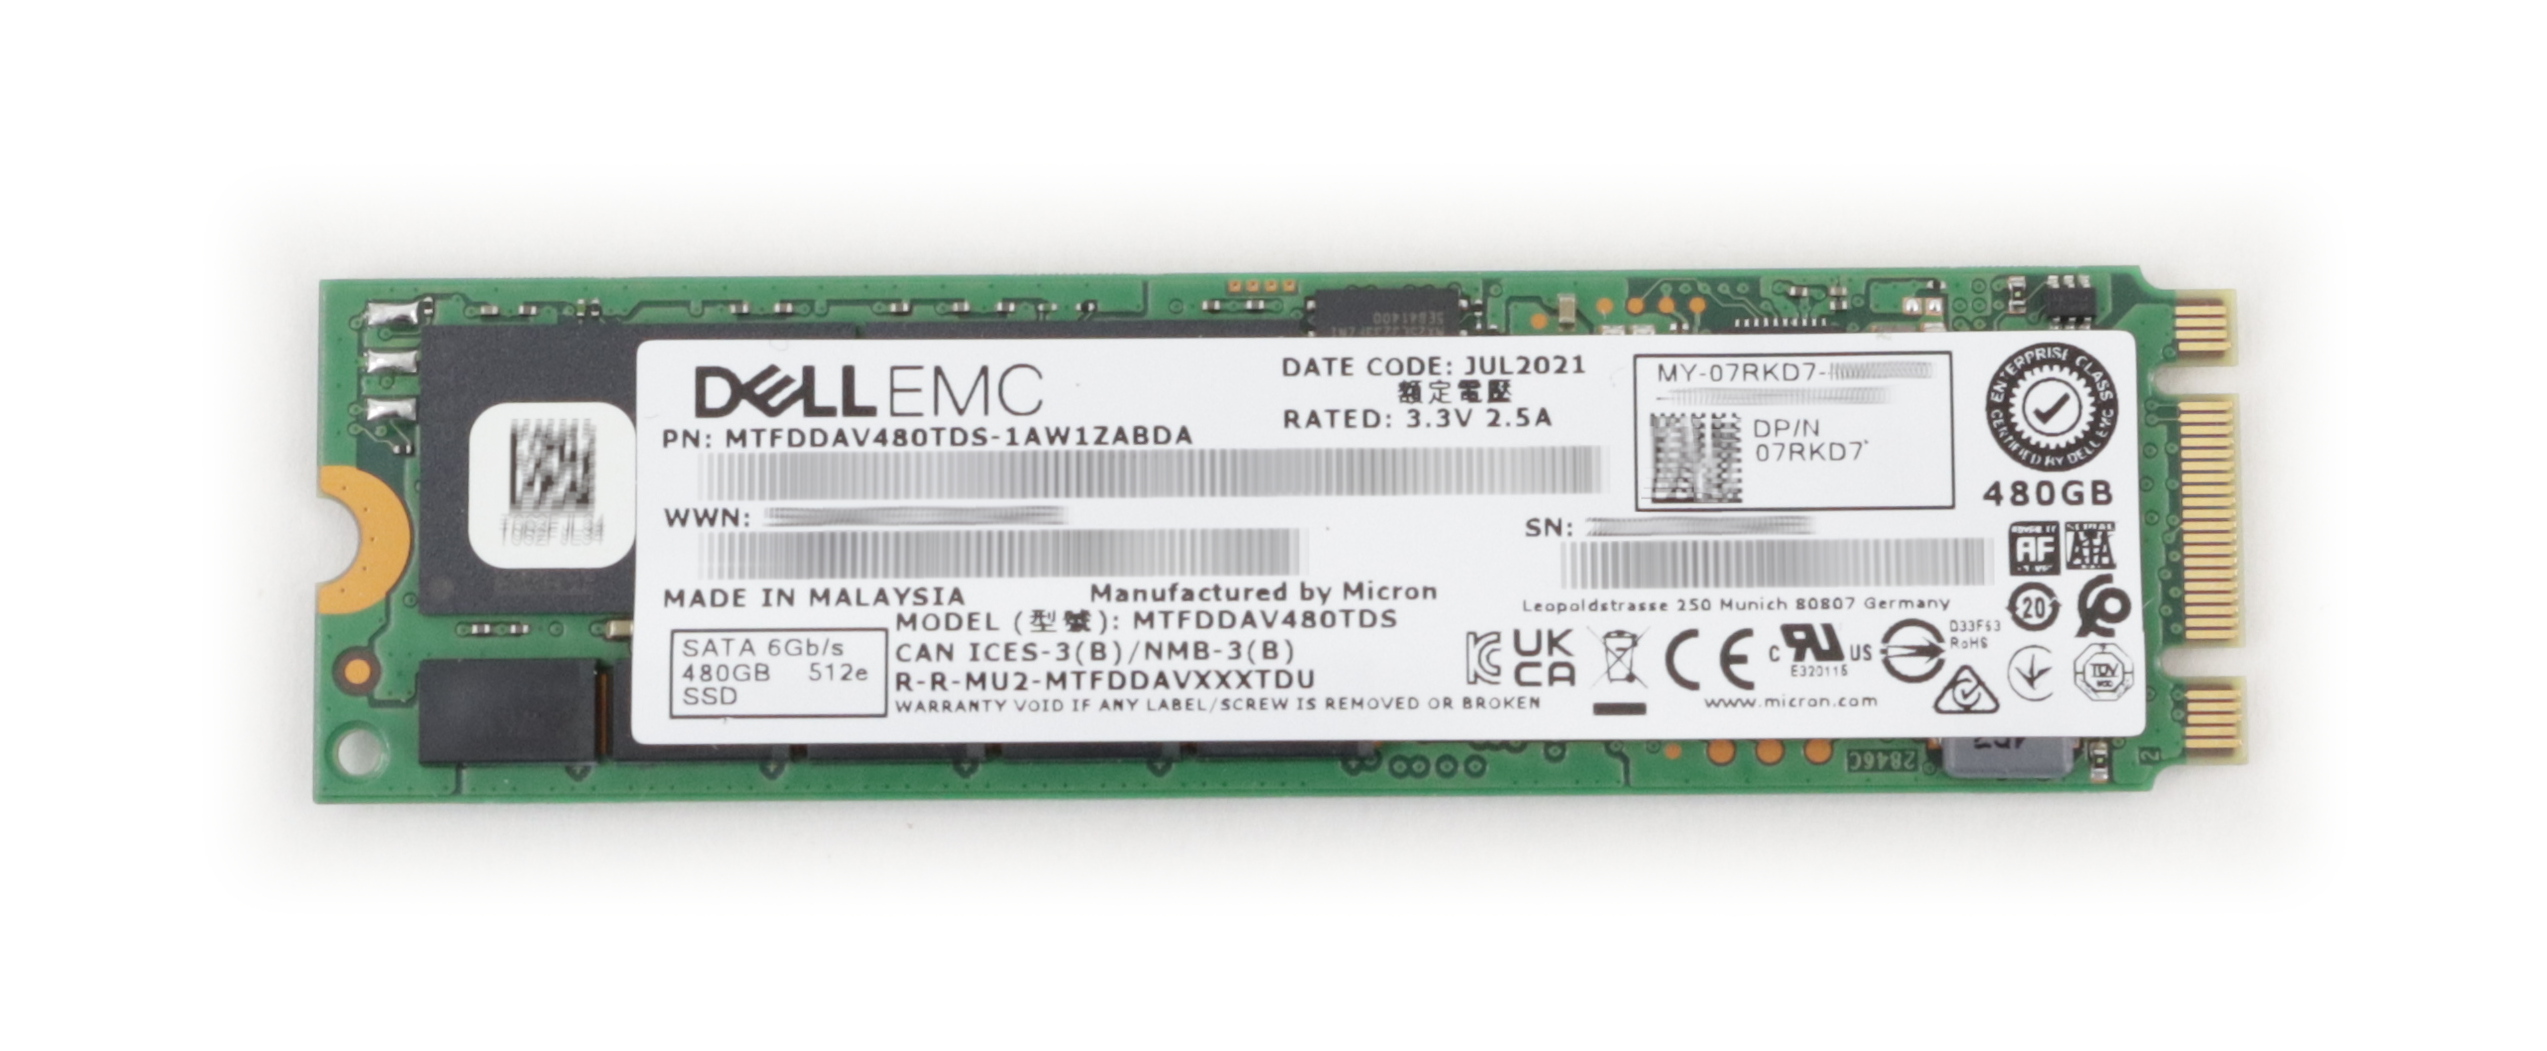 Dell EMC Micron 480GB MTFDDAV480TDS-1AW1ZABDA 512e SSD SATA 6GB/s 400-BLCK 7RKD7